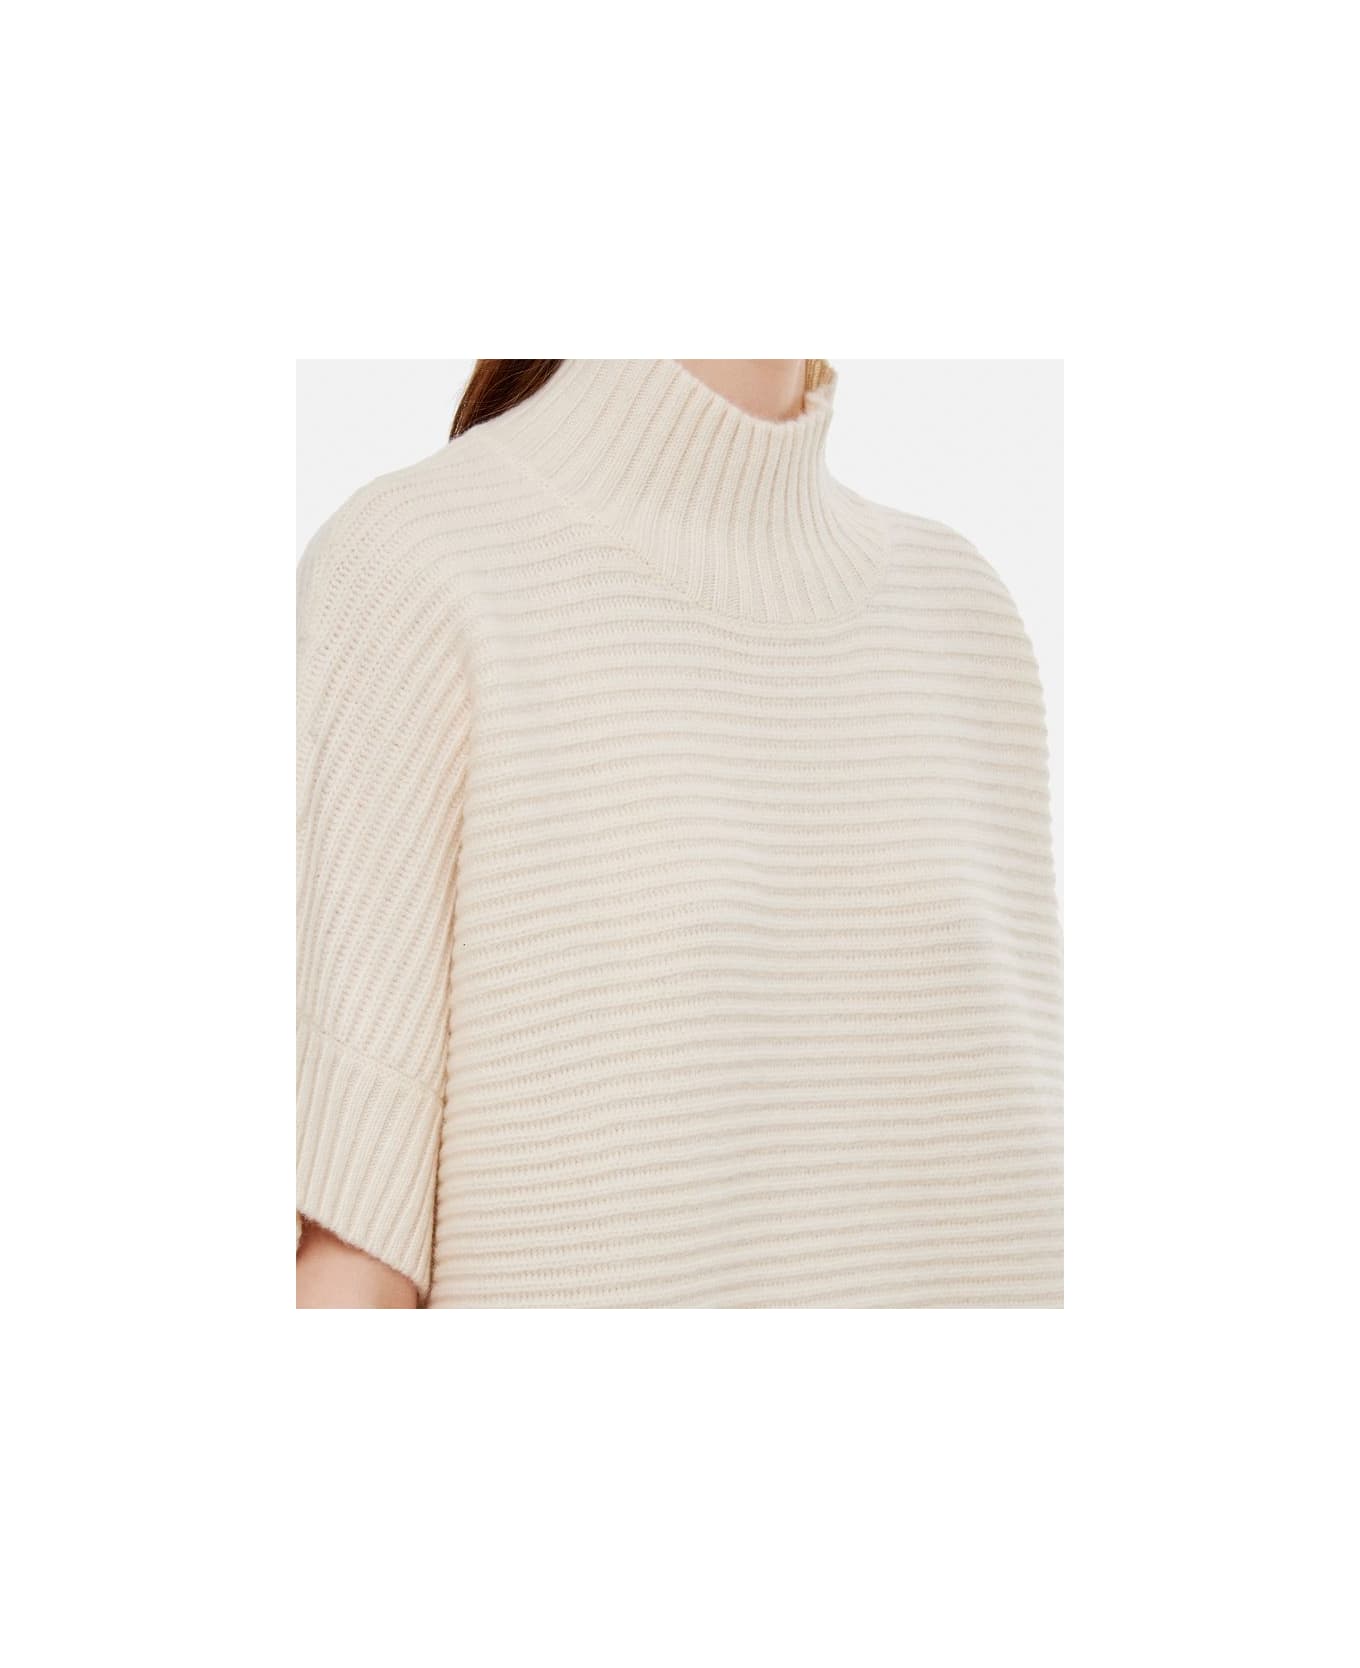 Max Mara Short Sleeves Turtleneck Sweater - White ニットウェア